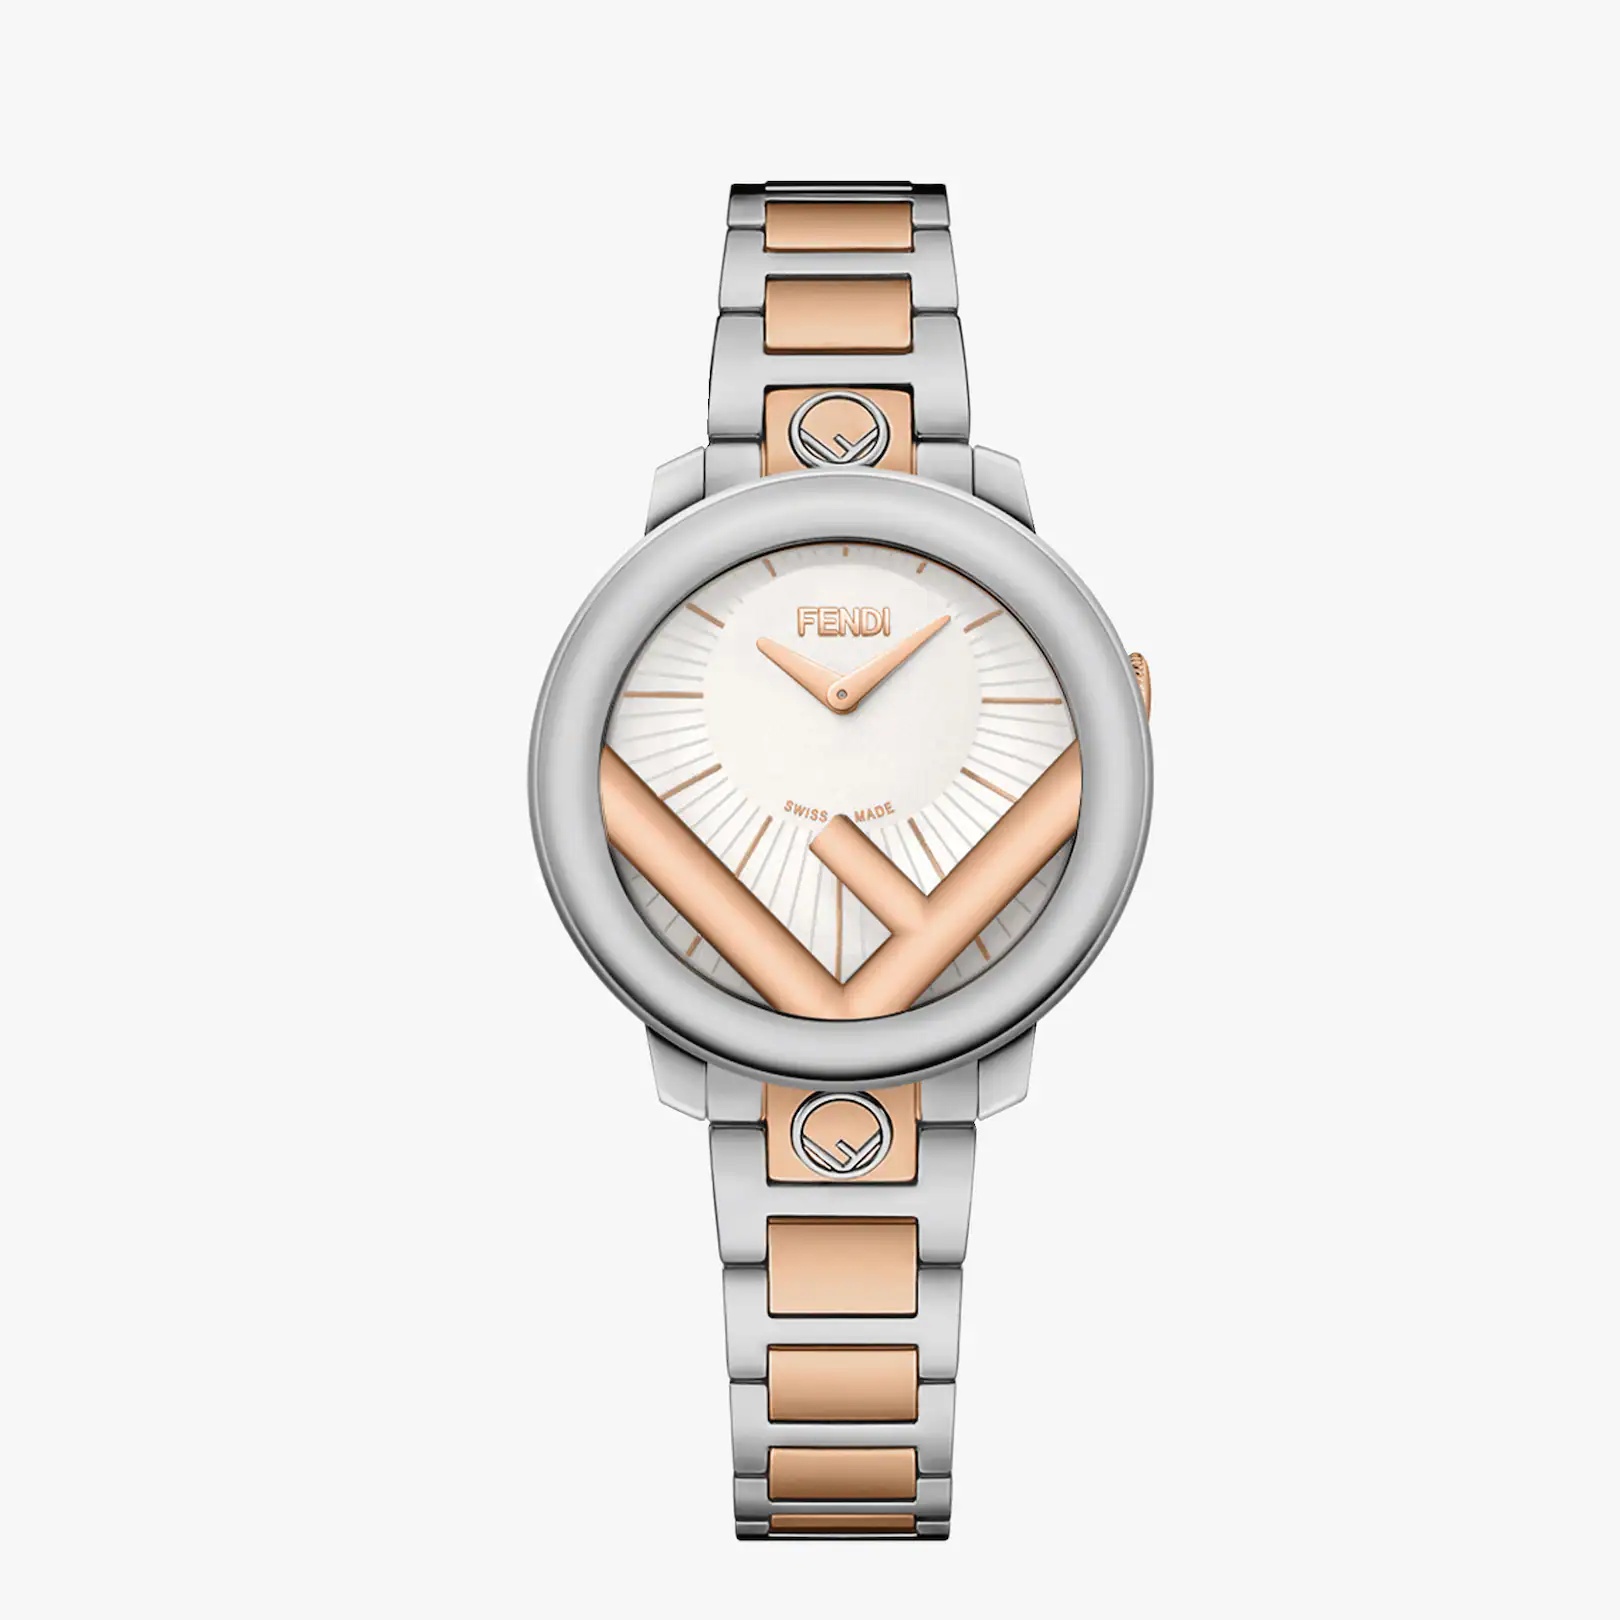 28 mm (1.1 inch) - Watch with F is Fendi logo - 1